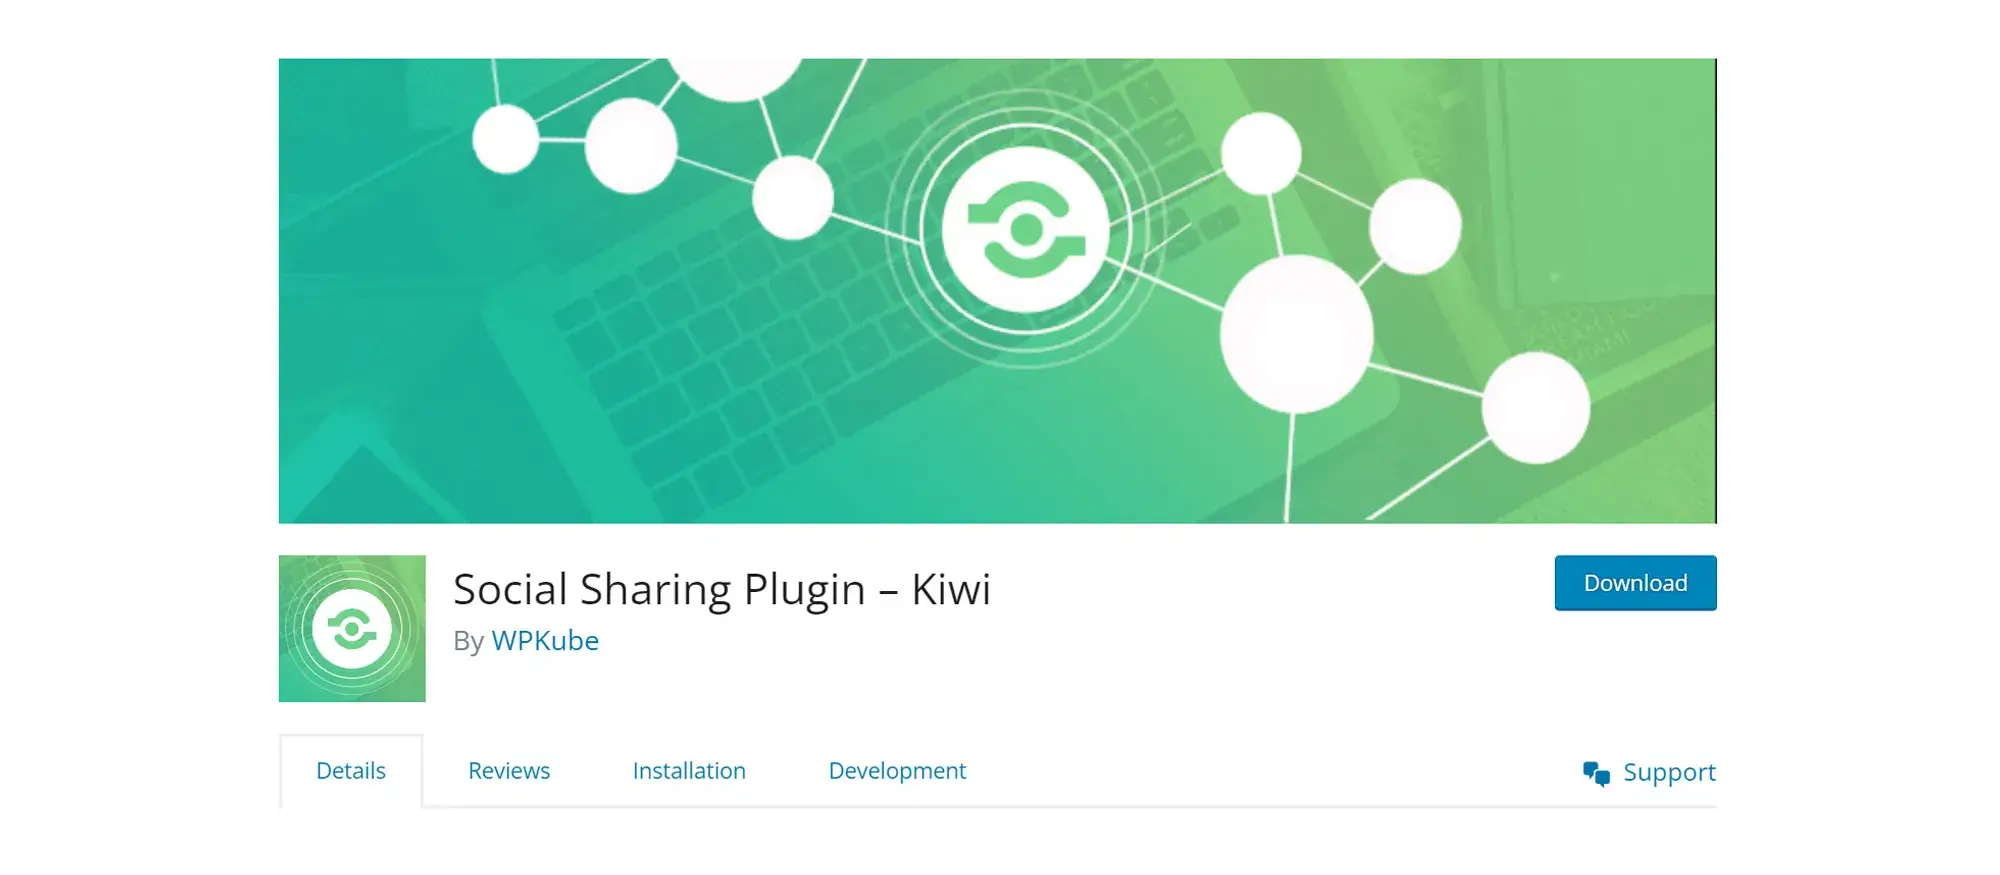 Social Sharing Plugin – Kiwi